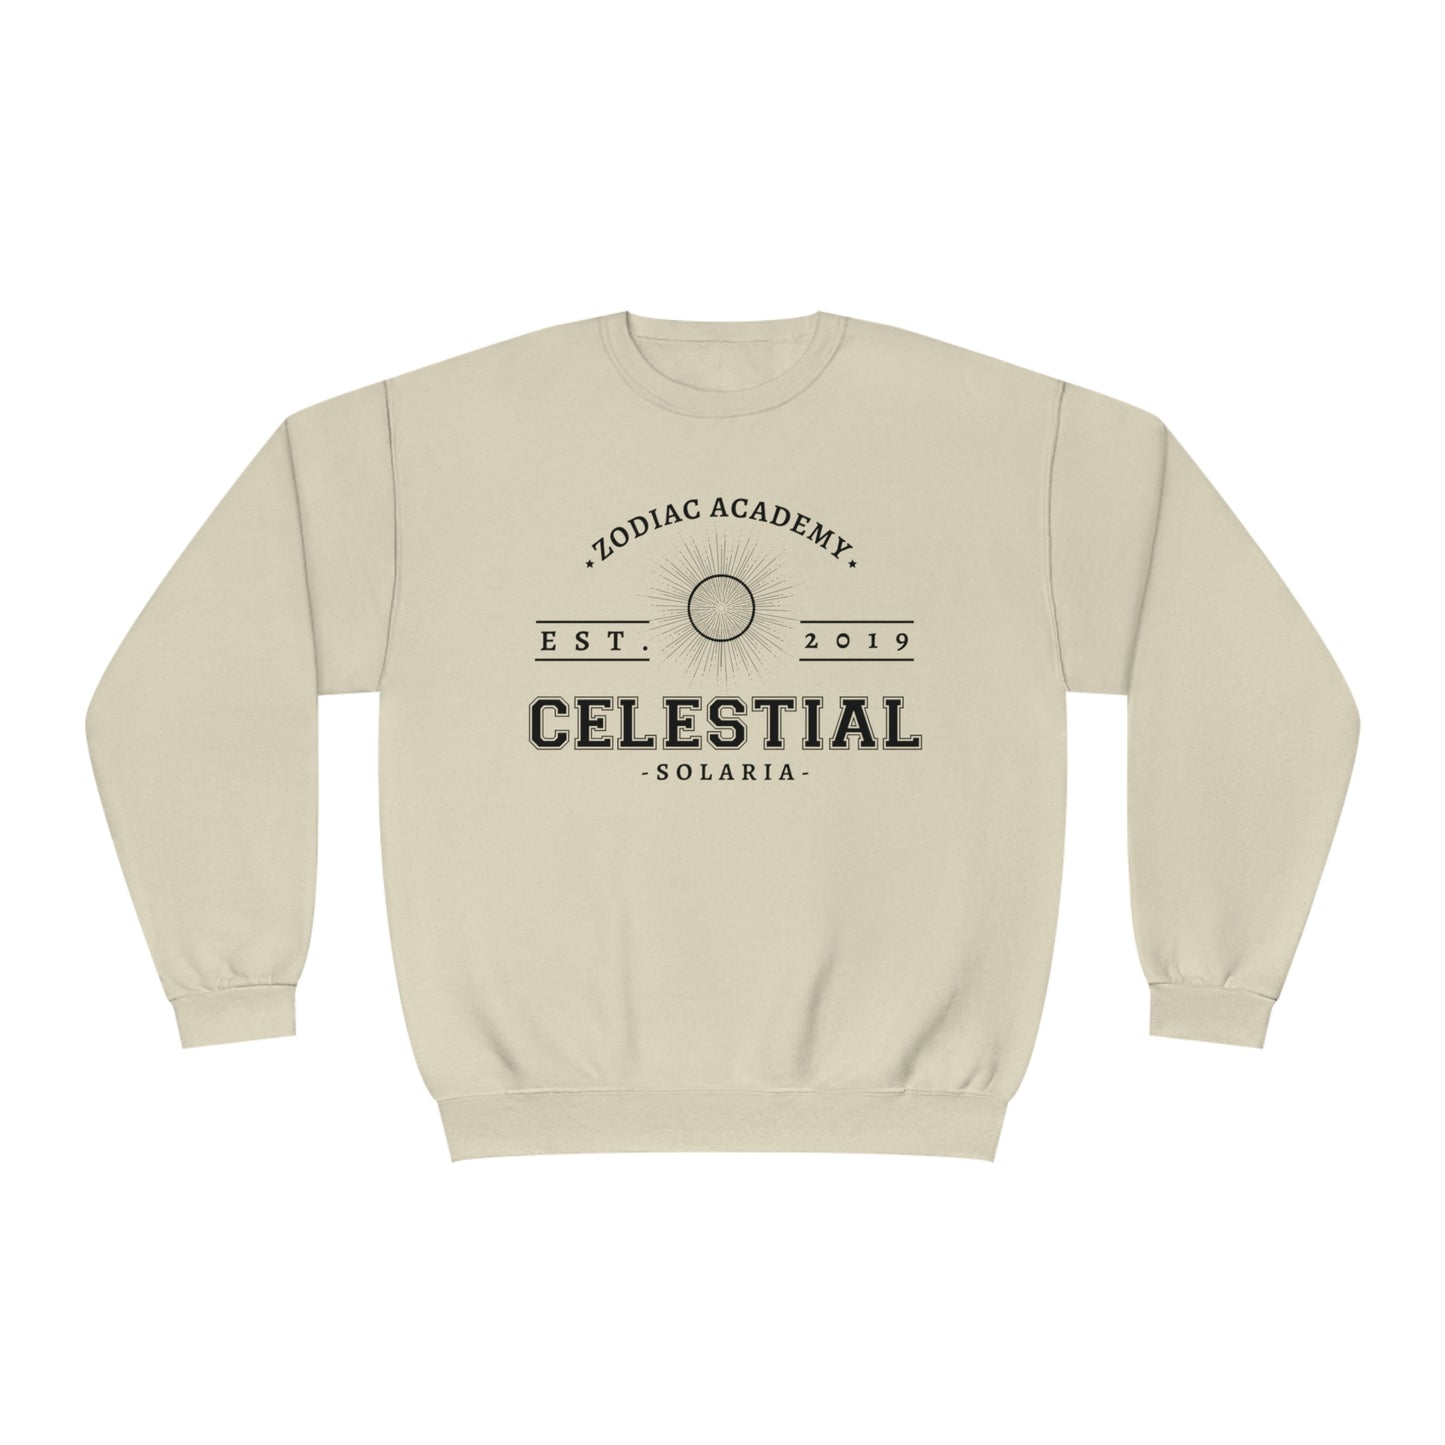 Celestial Zodiac Academy Crewneck Sweatshirt